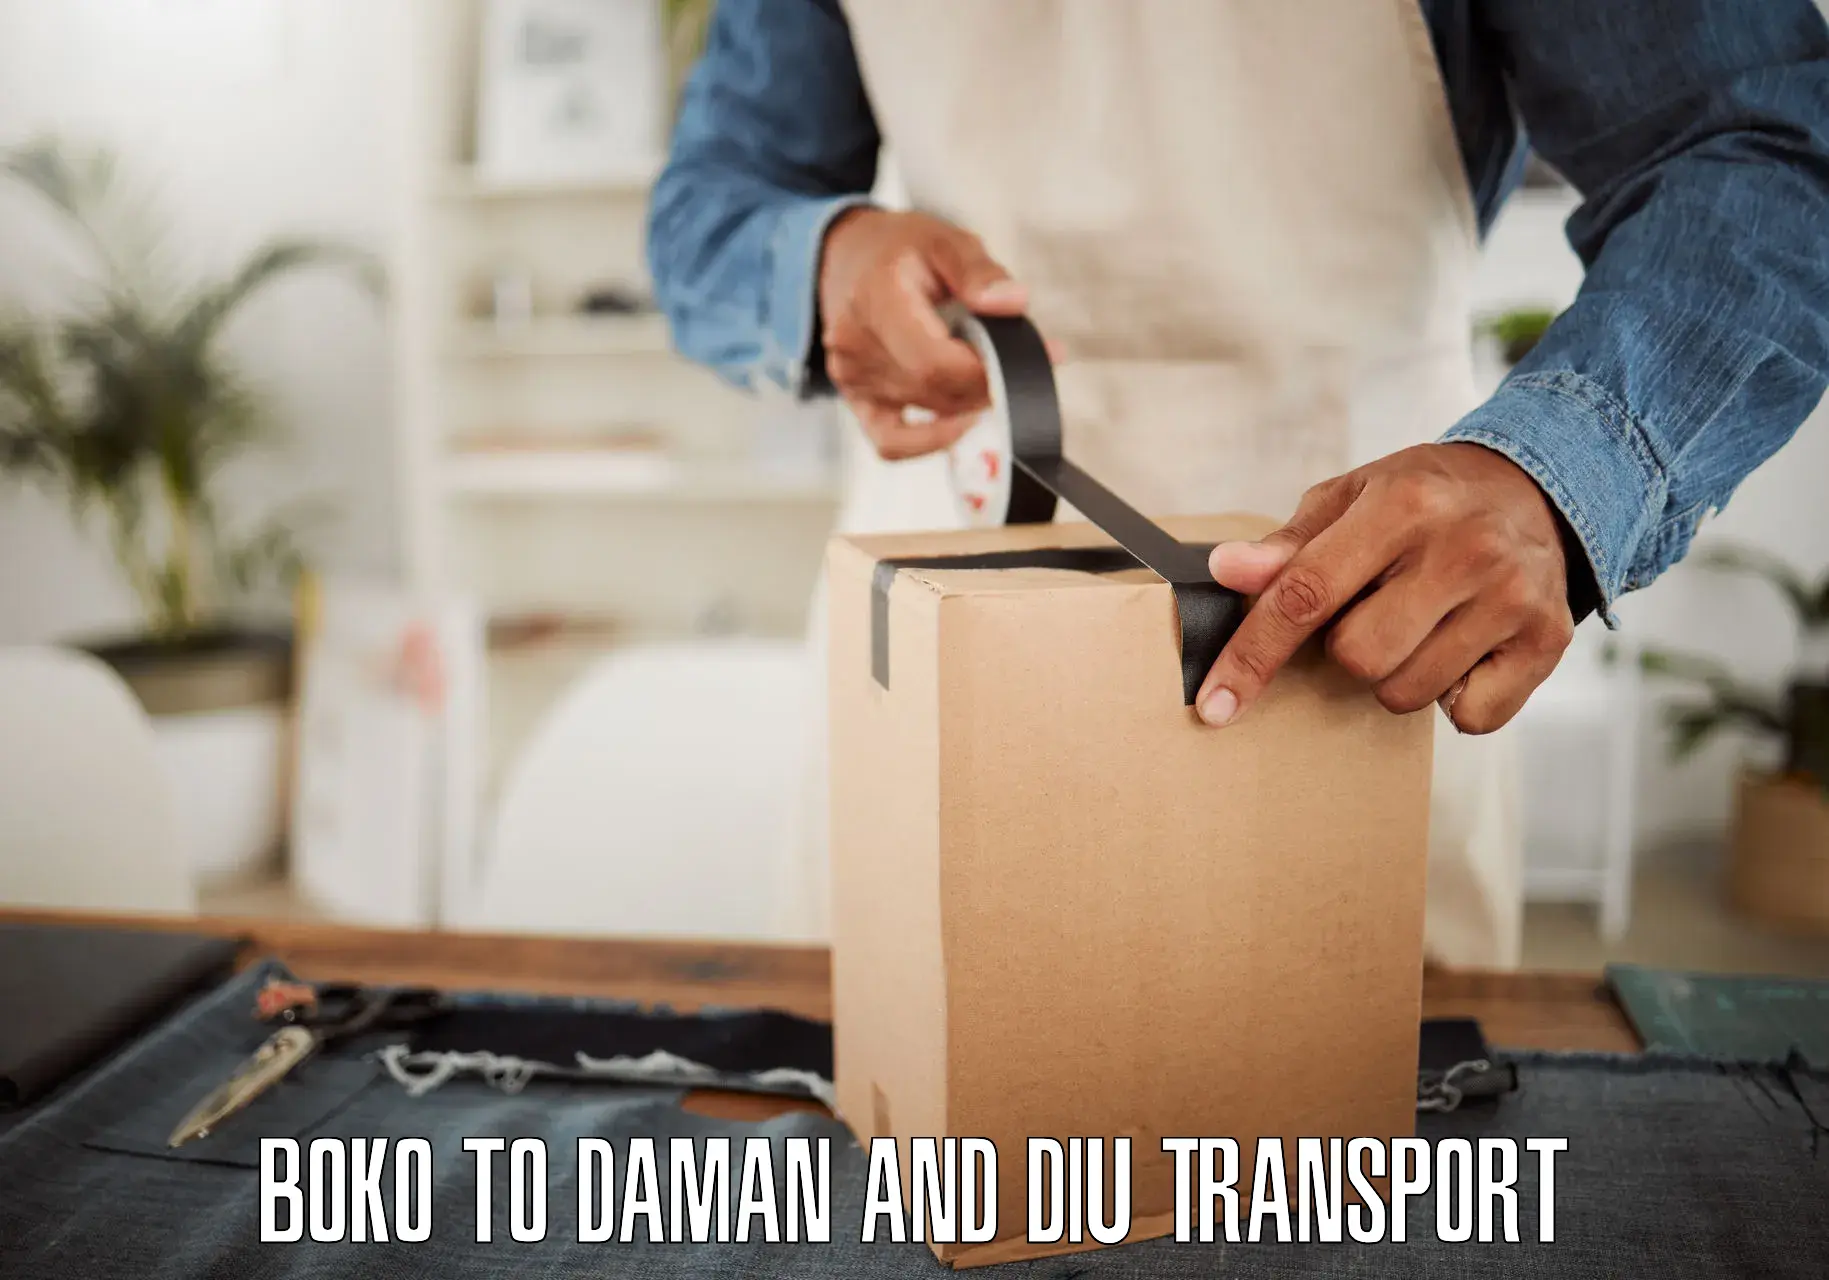 Nearest transport service in Boko to Diu